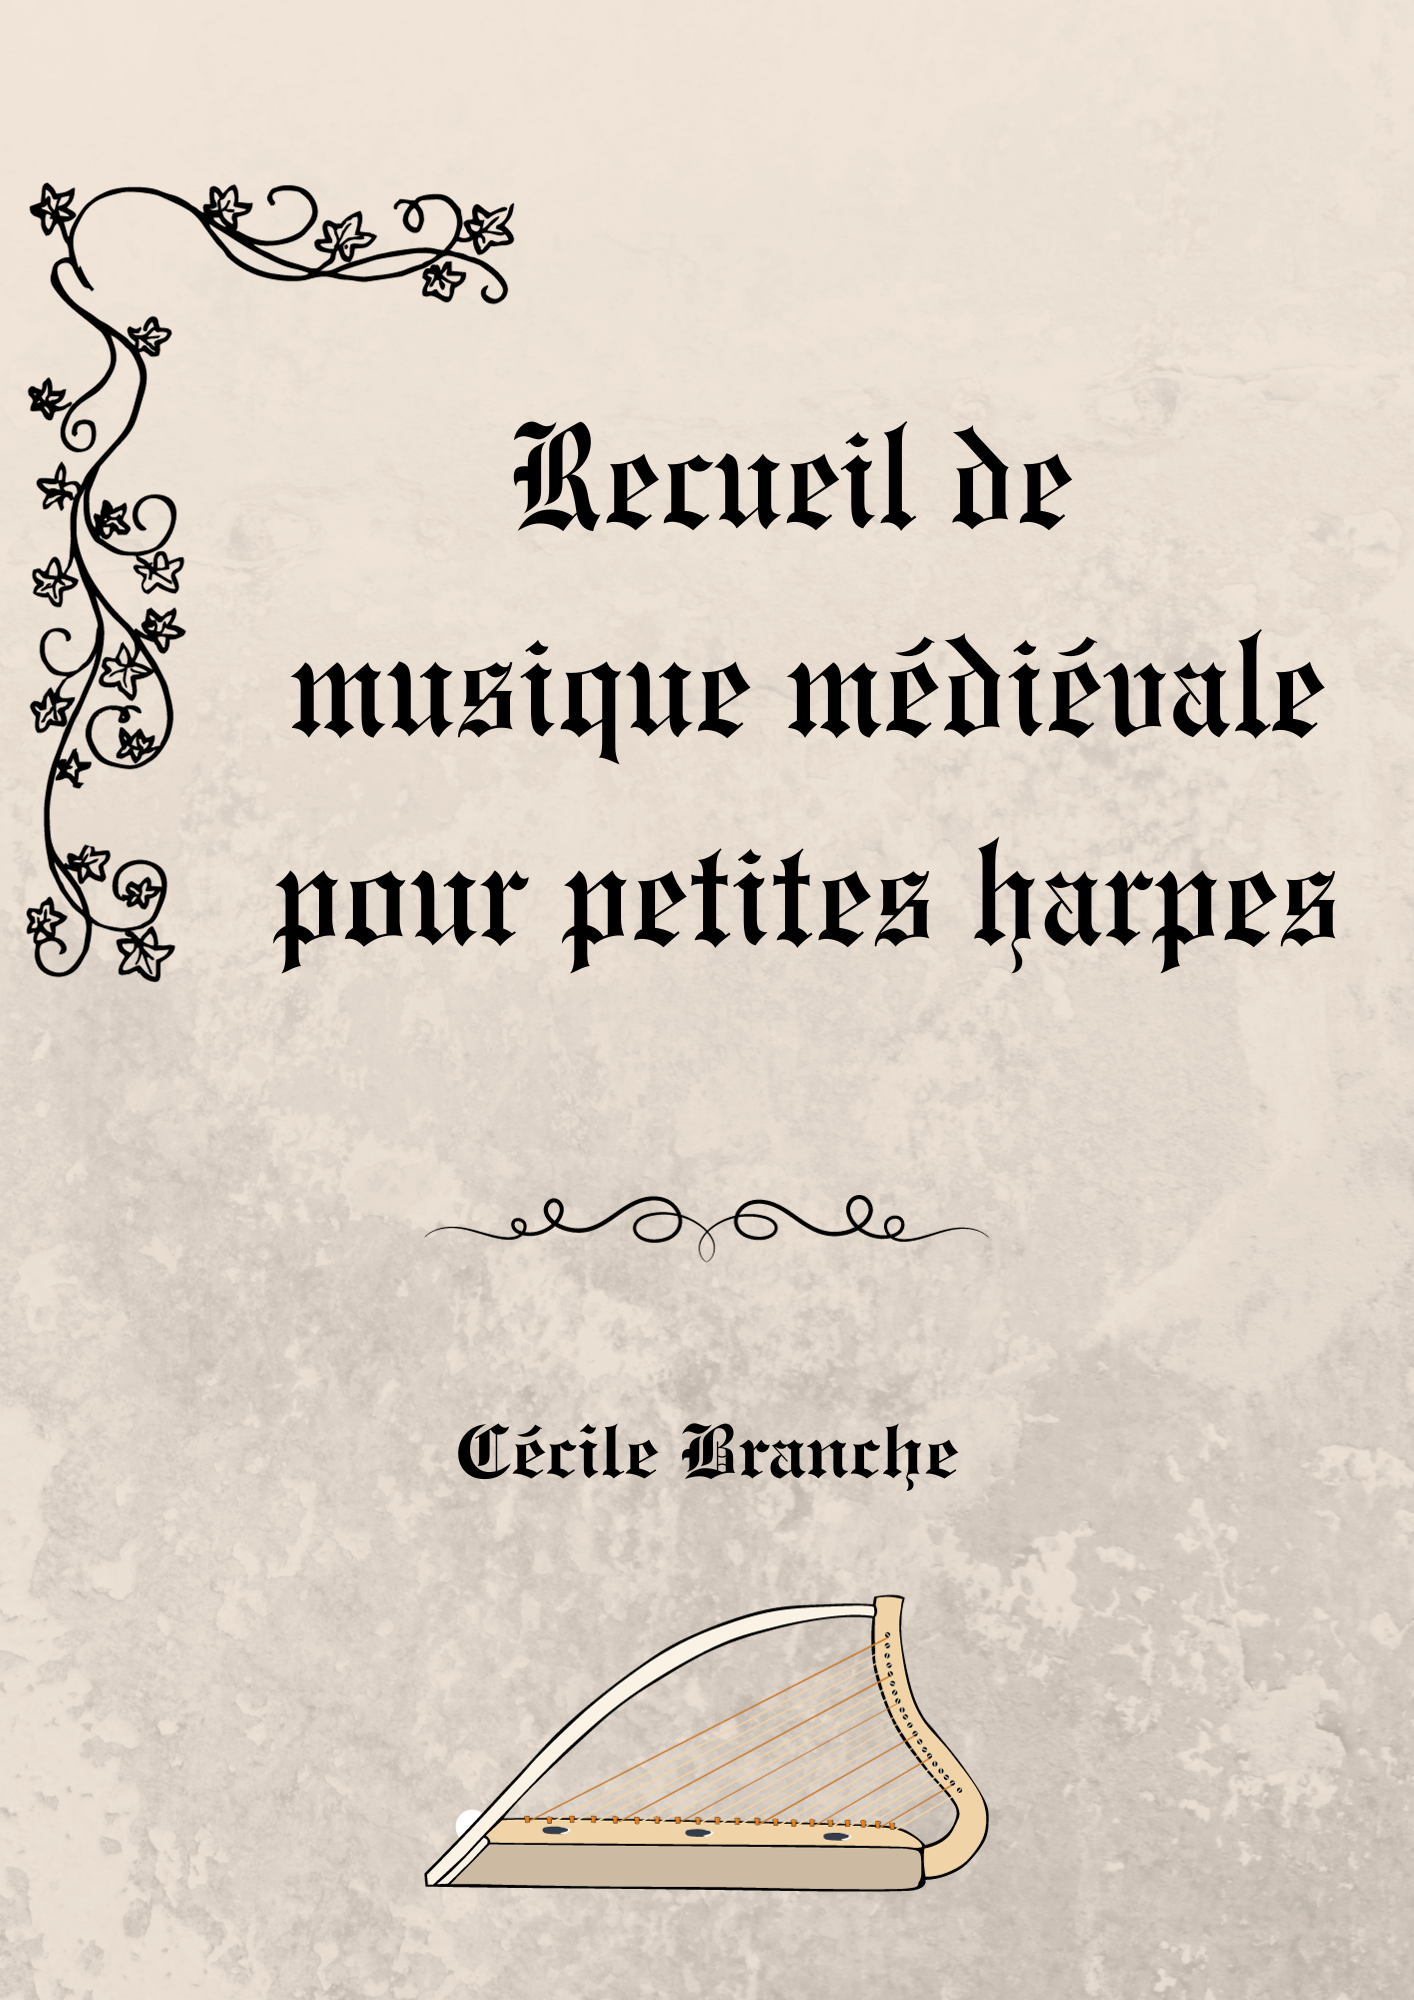 Recueil de musique médiévale pour harpe – Version Papier